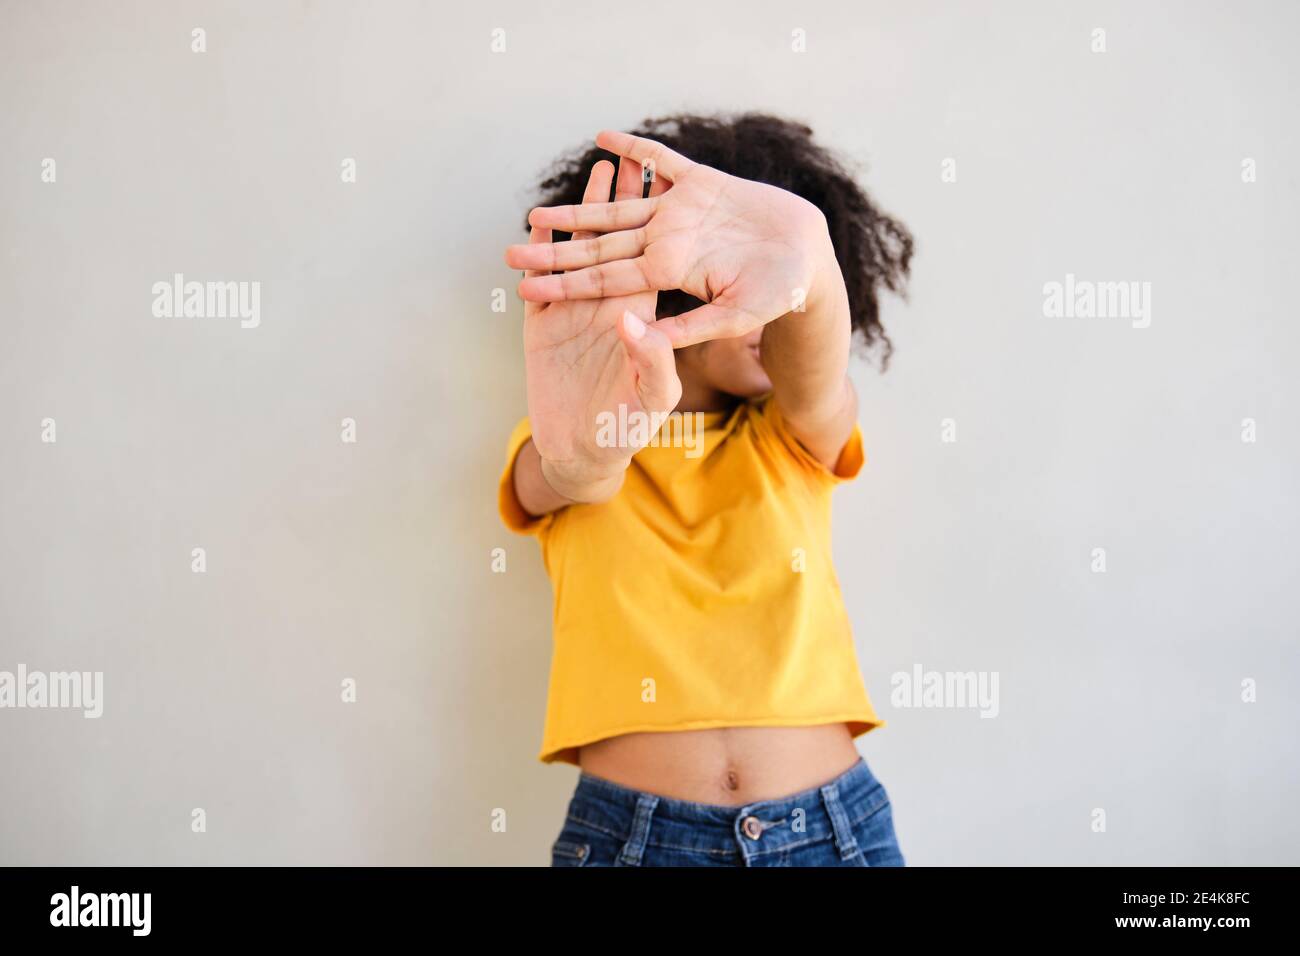 Frau mit Stop-Geste, während sie gegen die weiße Wand steht Stockfoto